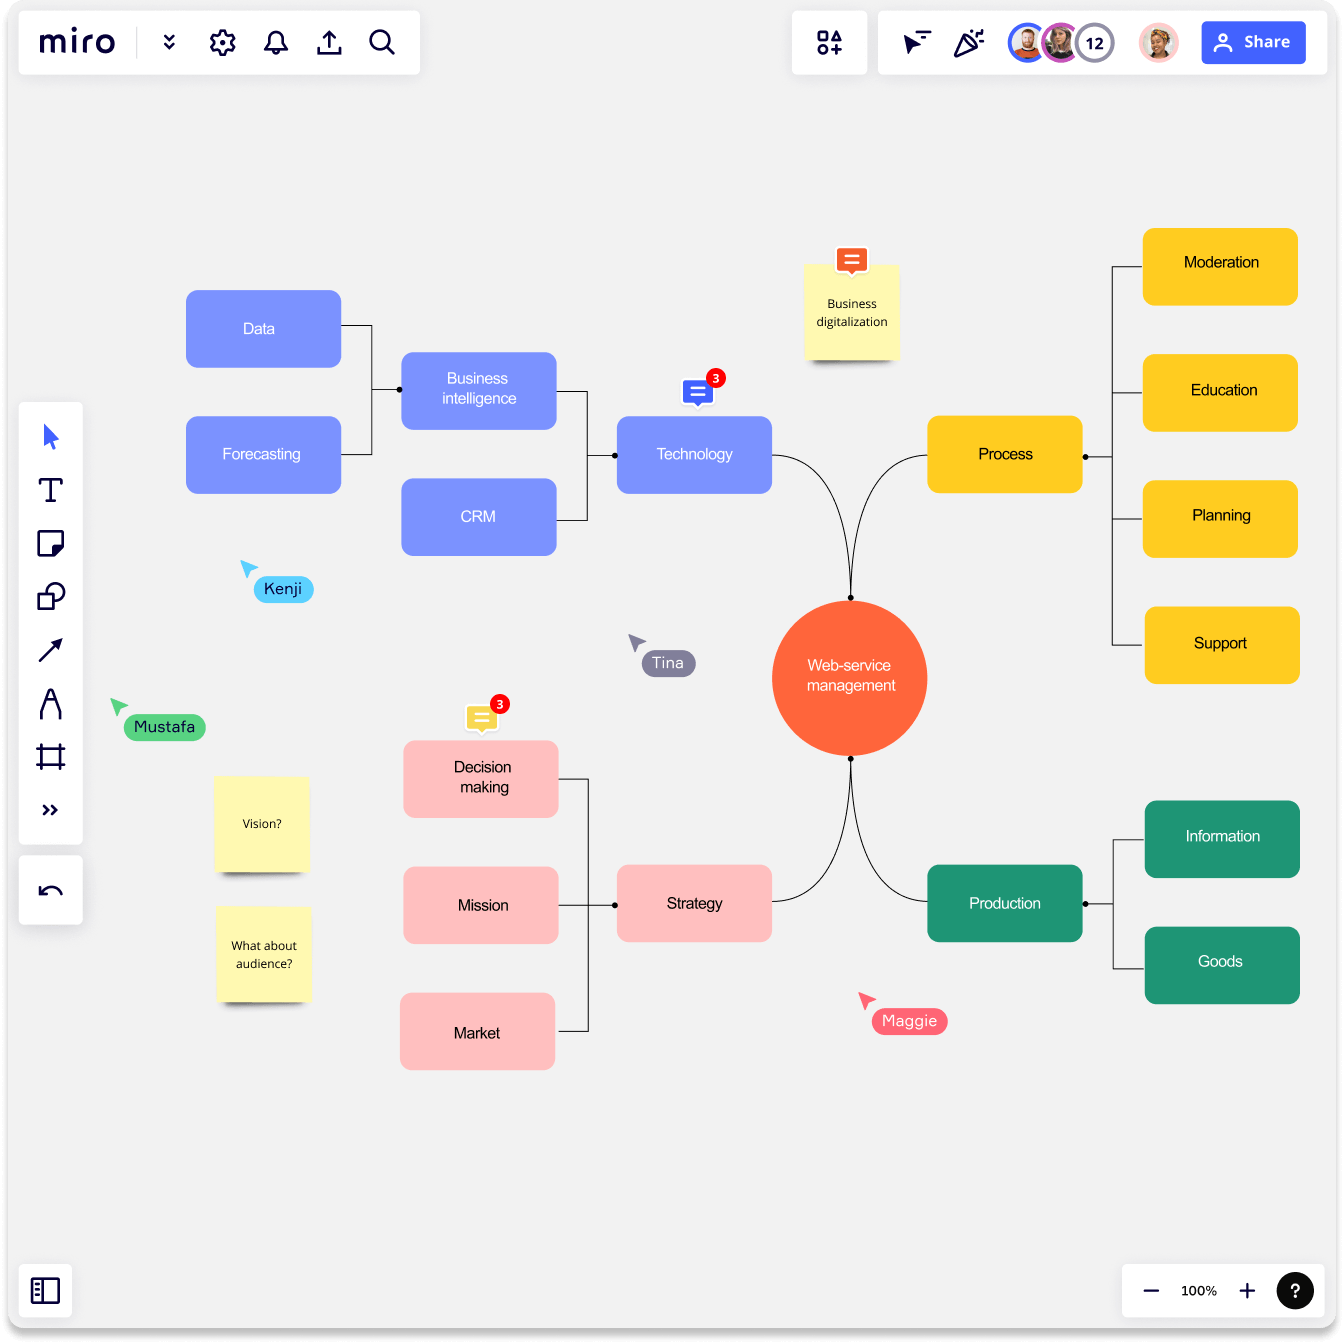 mapa conceptual como organizador gragfico